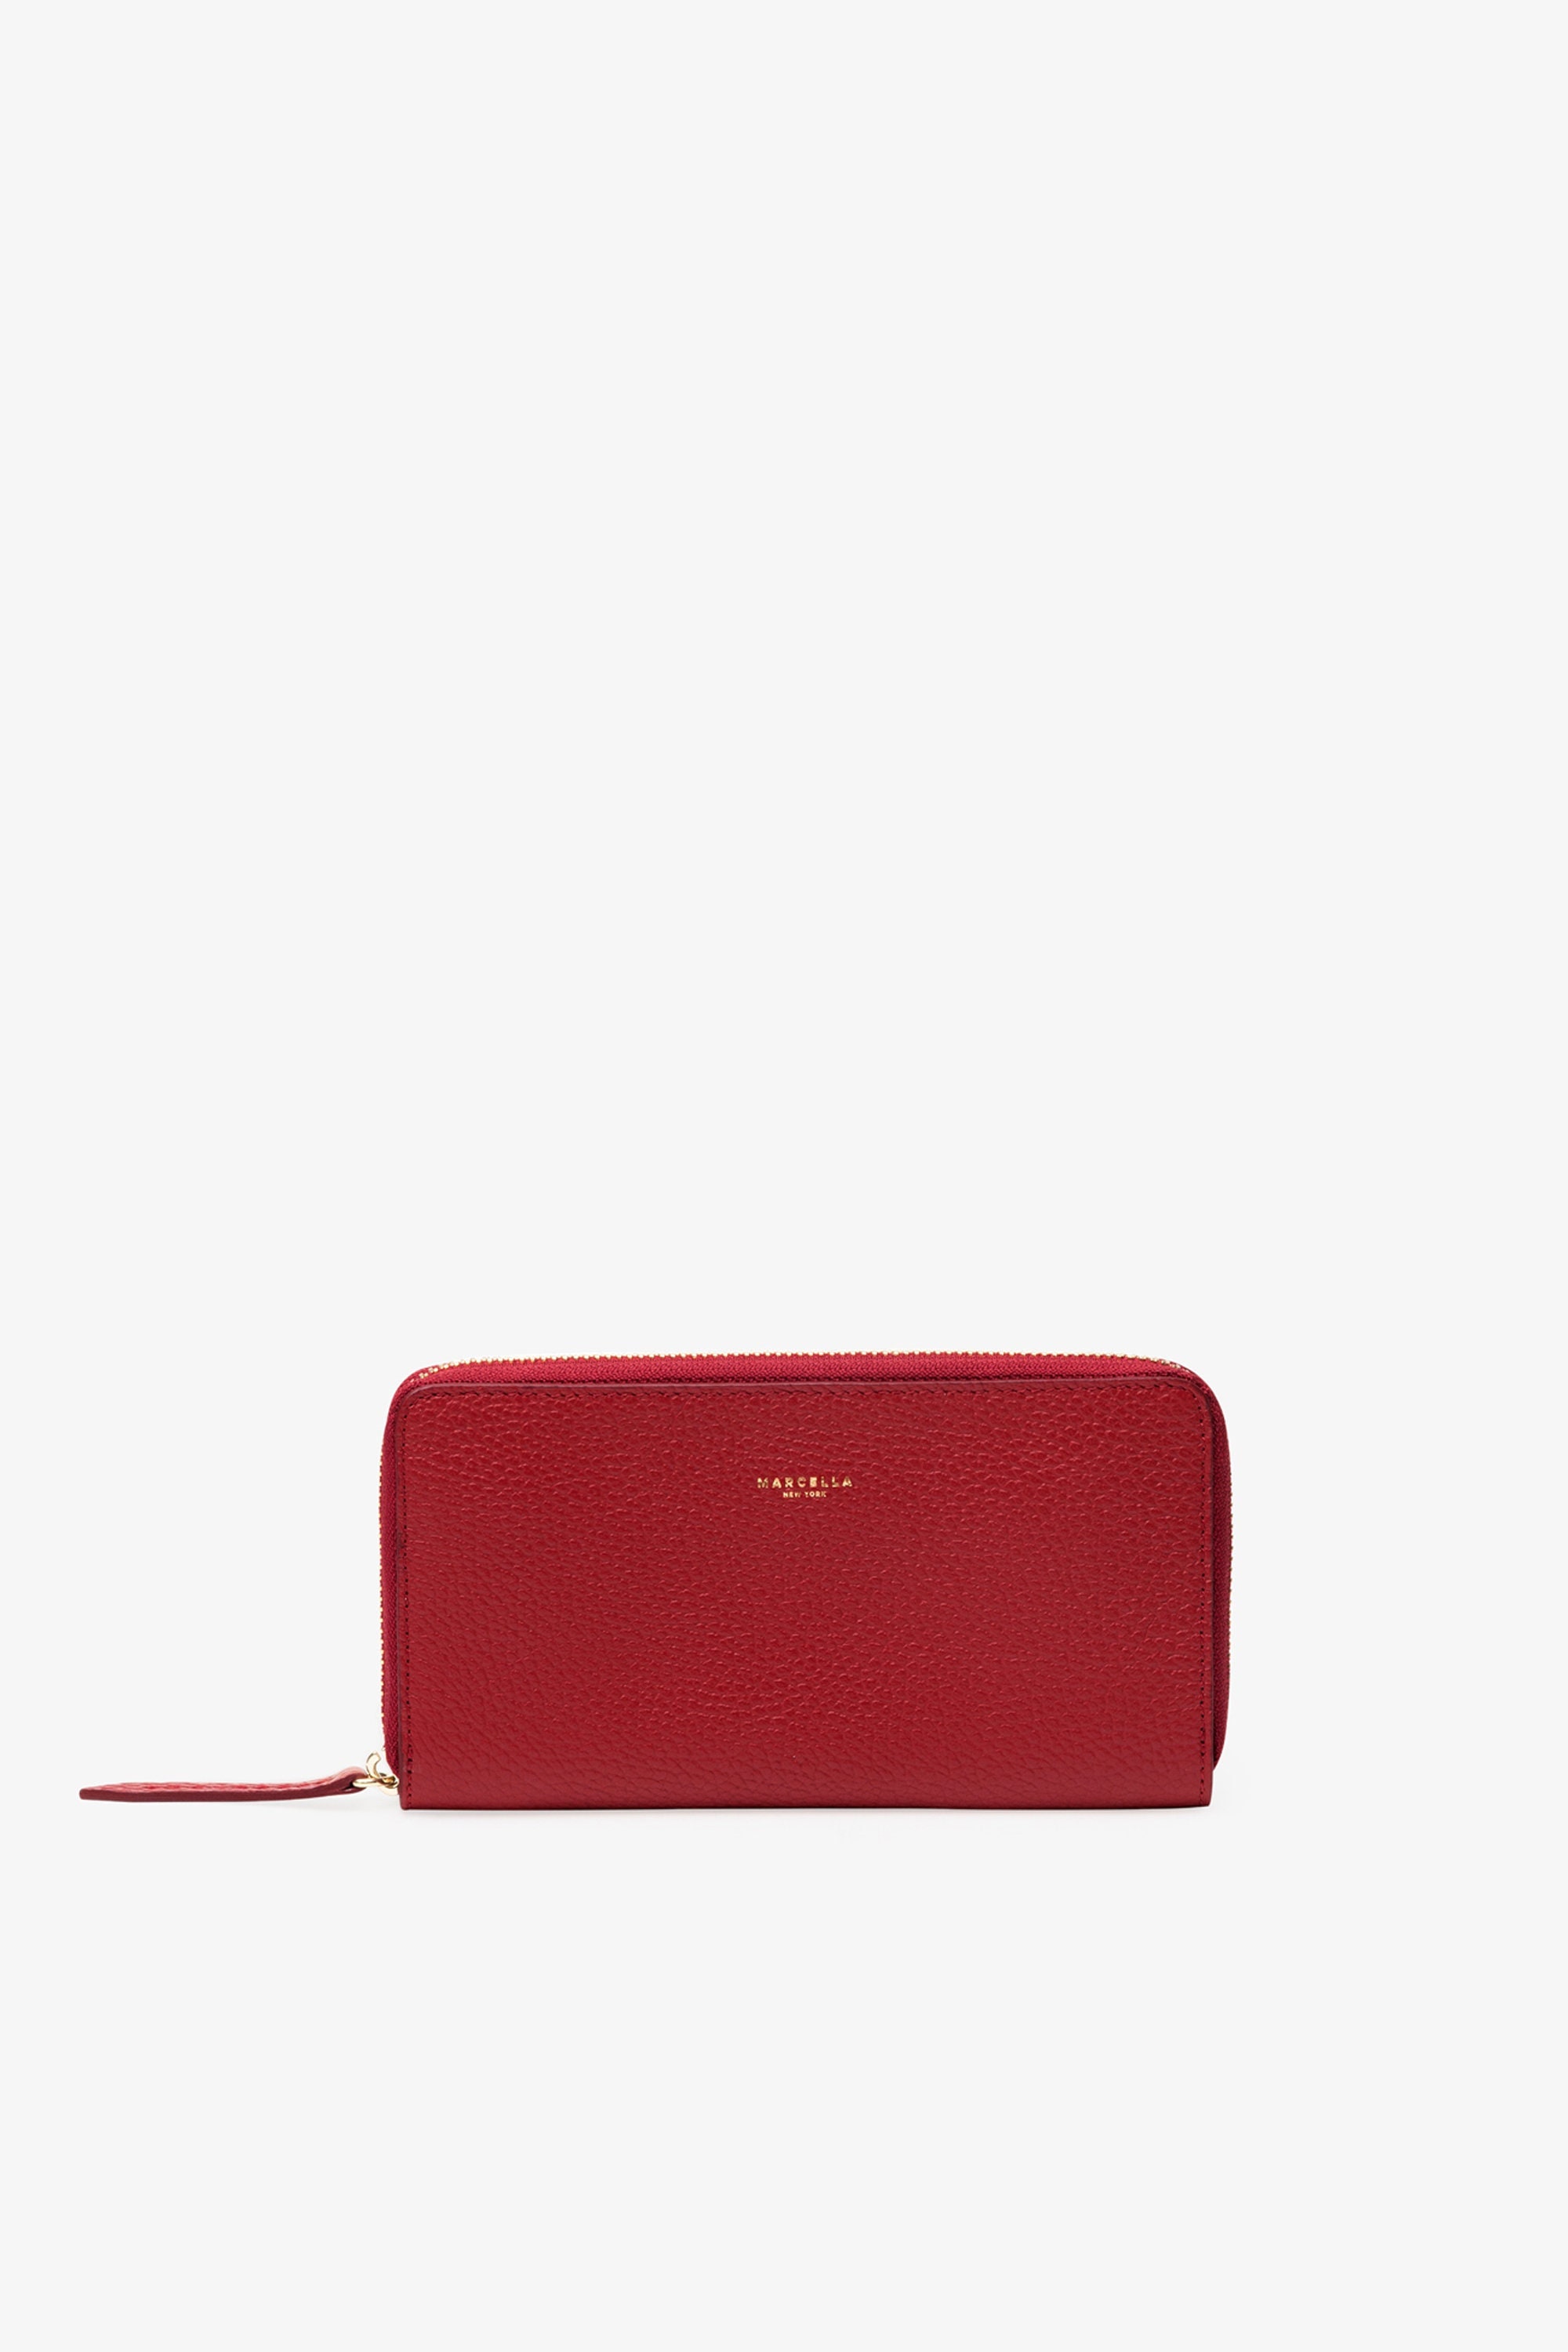 Louis Vuitton Red Ostrich Zippy Wallet. Pristine Condition. 7.5